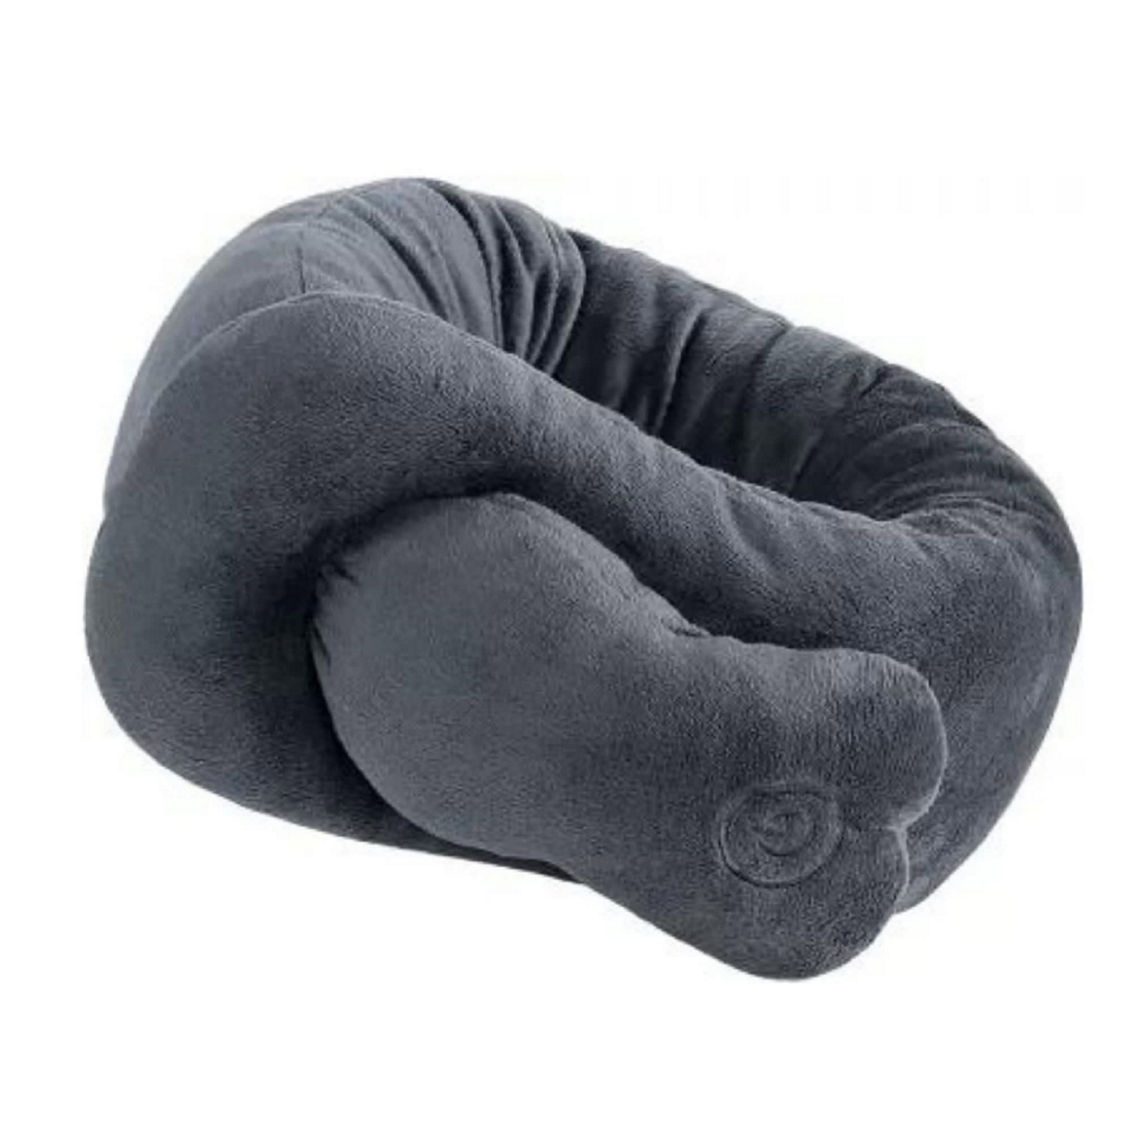 PURSONIC Portable Neck & Shoulder Adjustable Massaging Wrap - Image 2 of 5